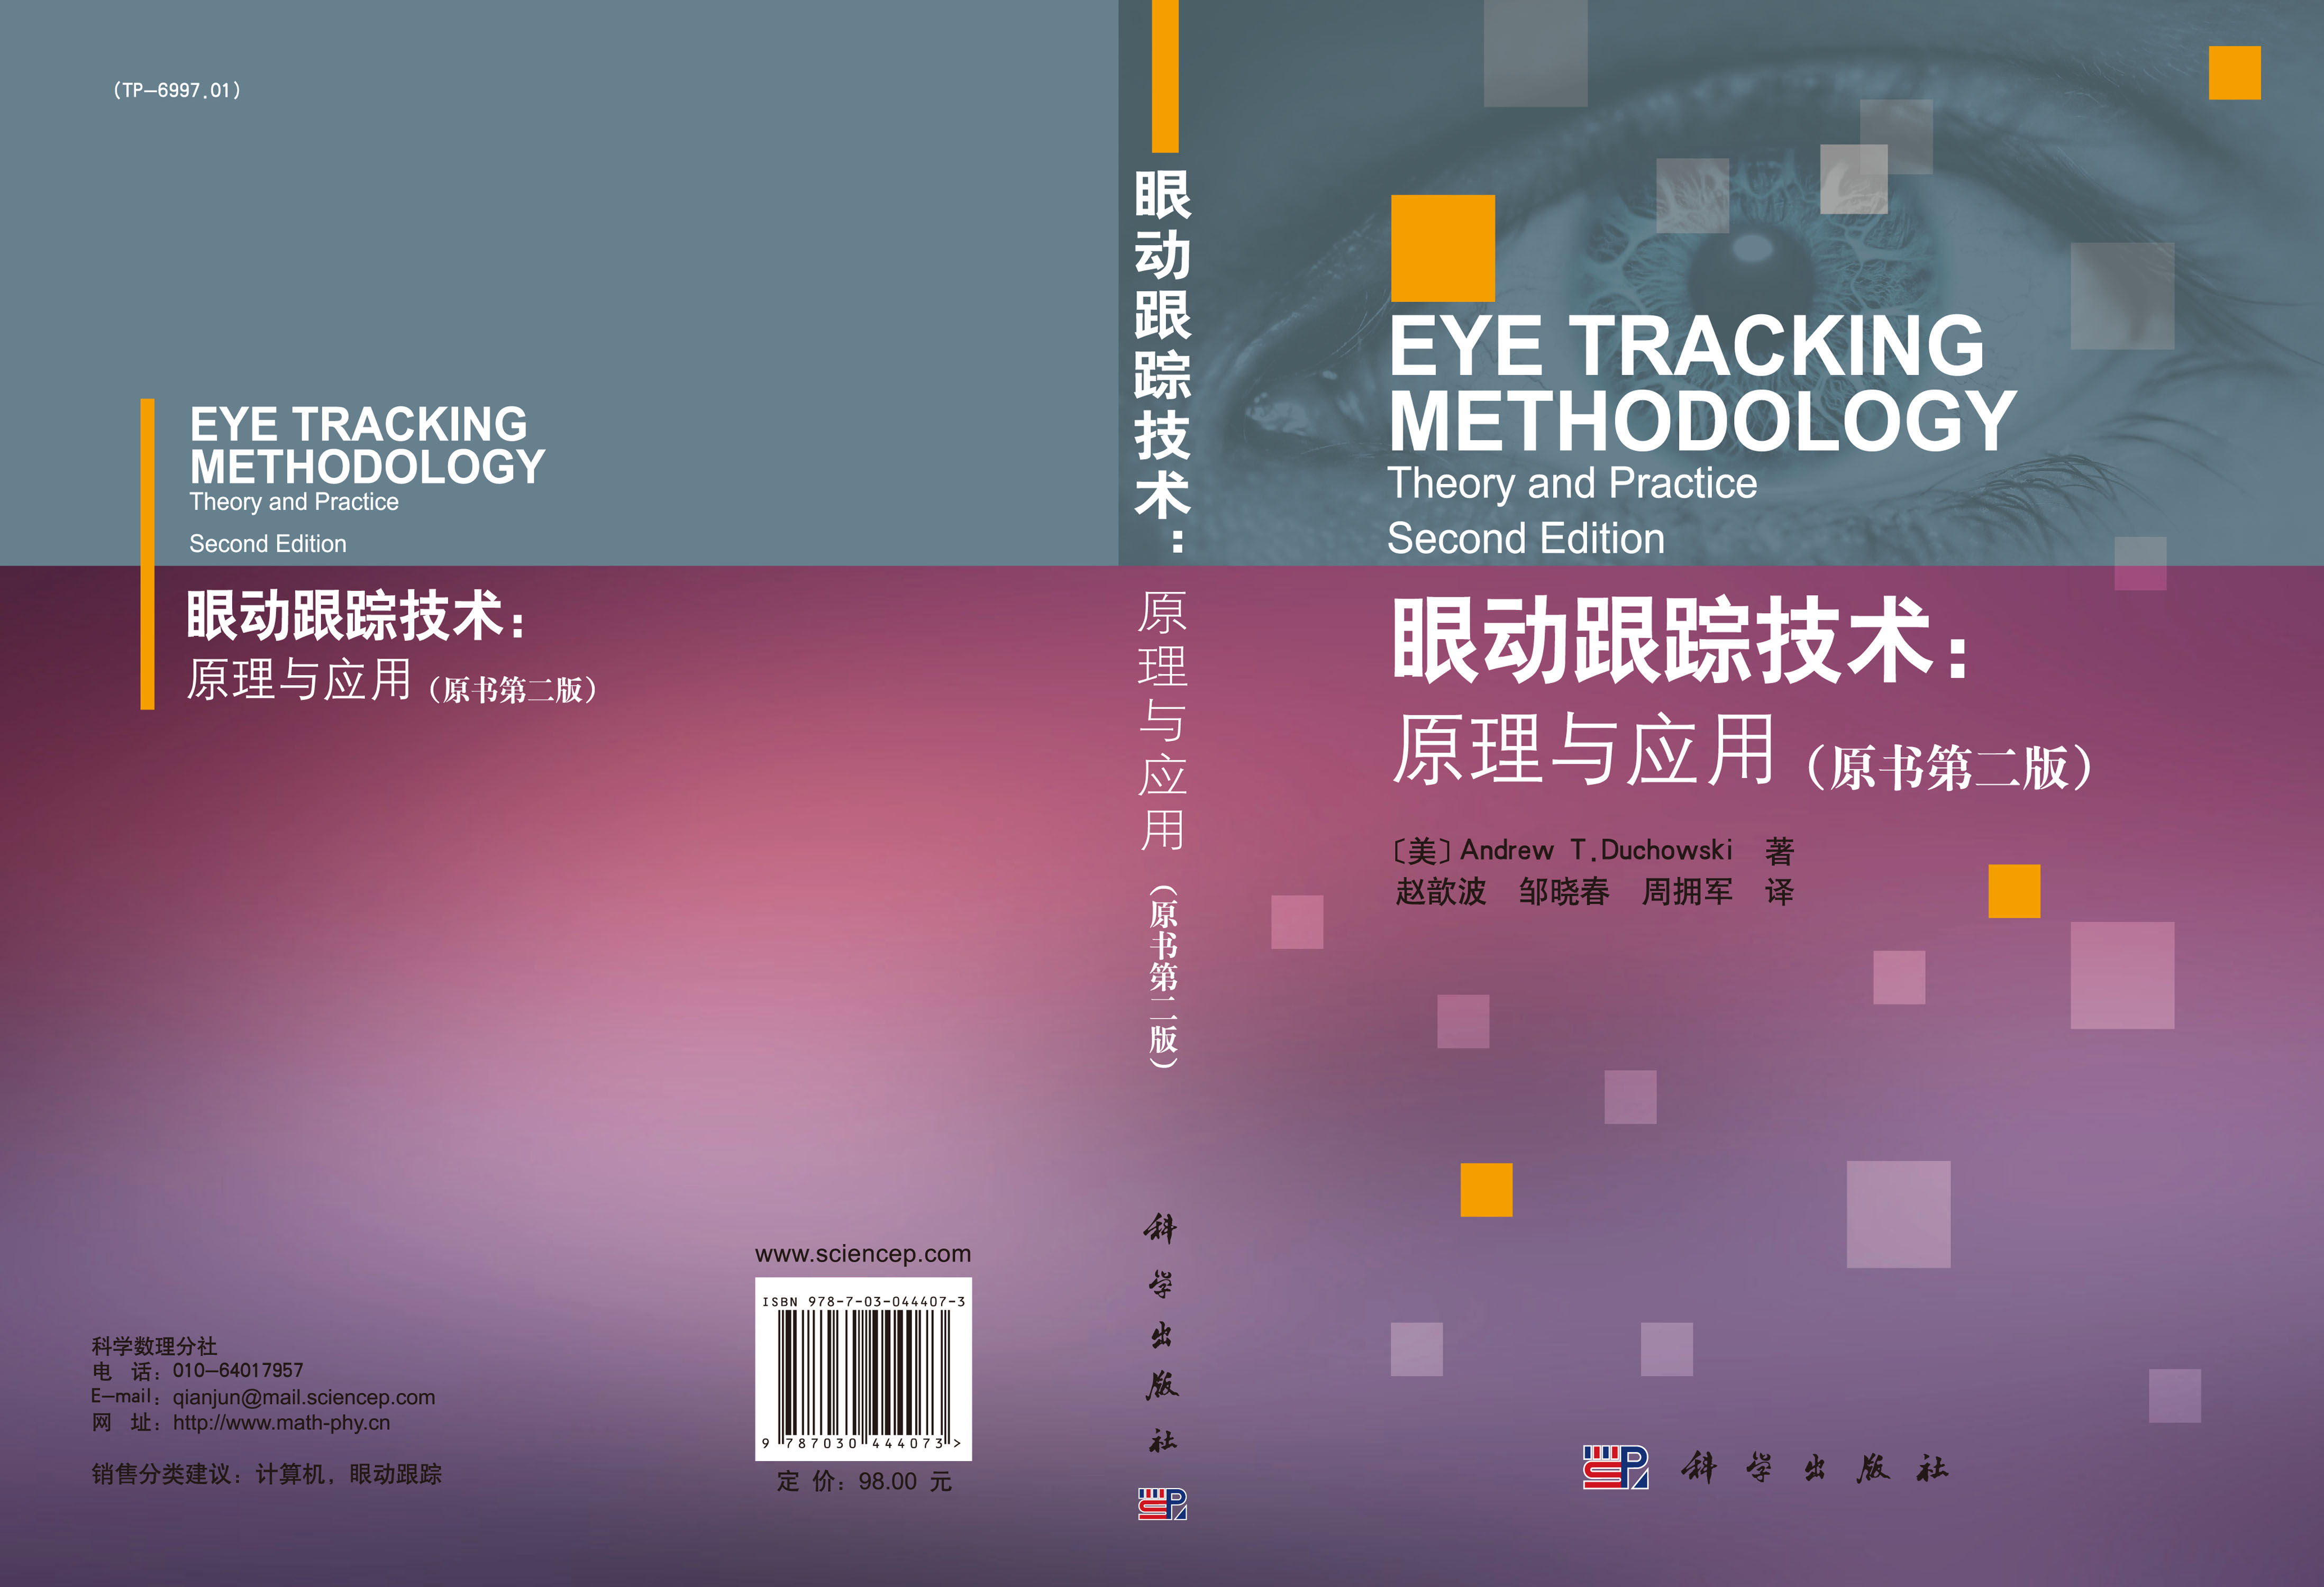 眼动跟踪技术：原理与应用:原书第2版